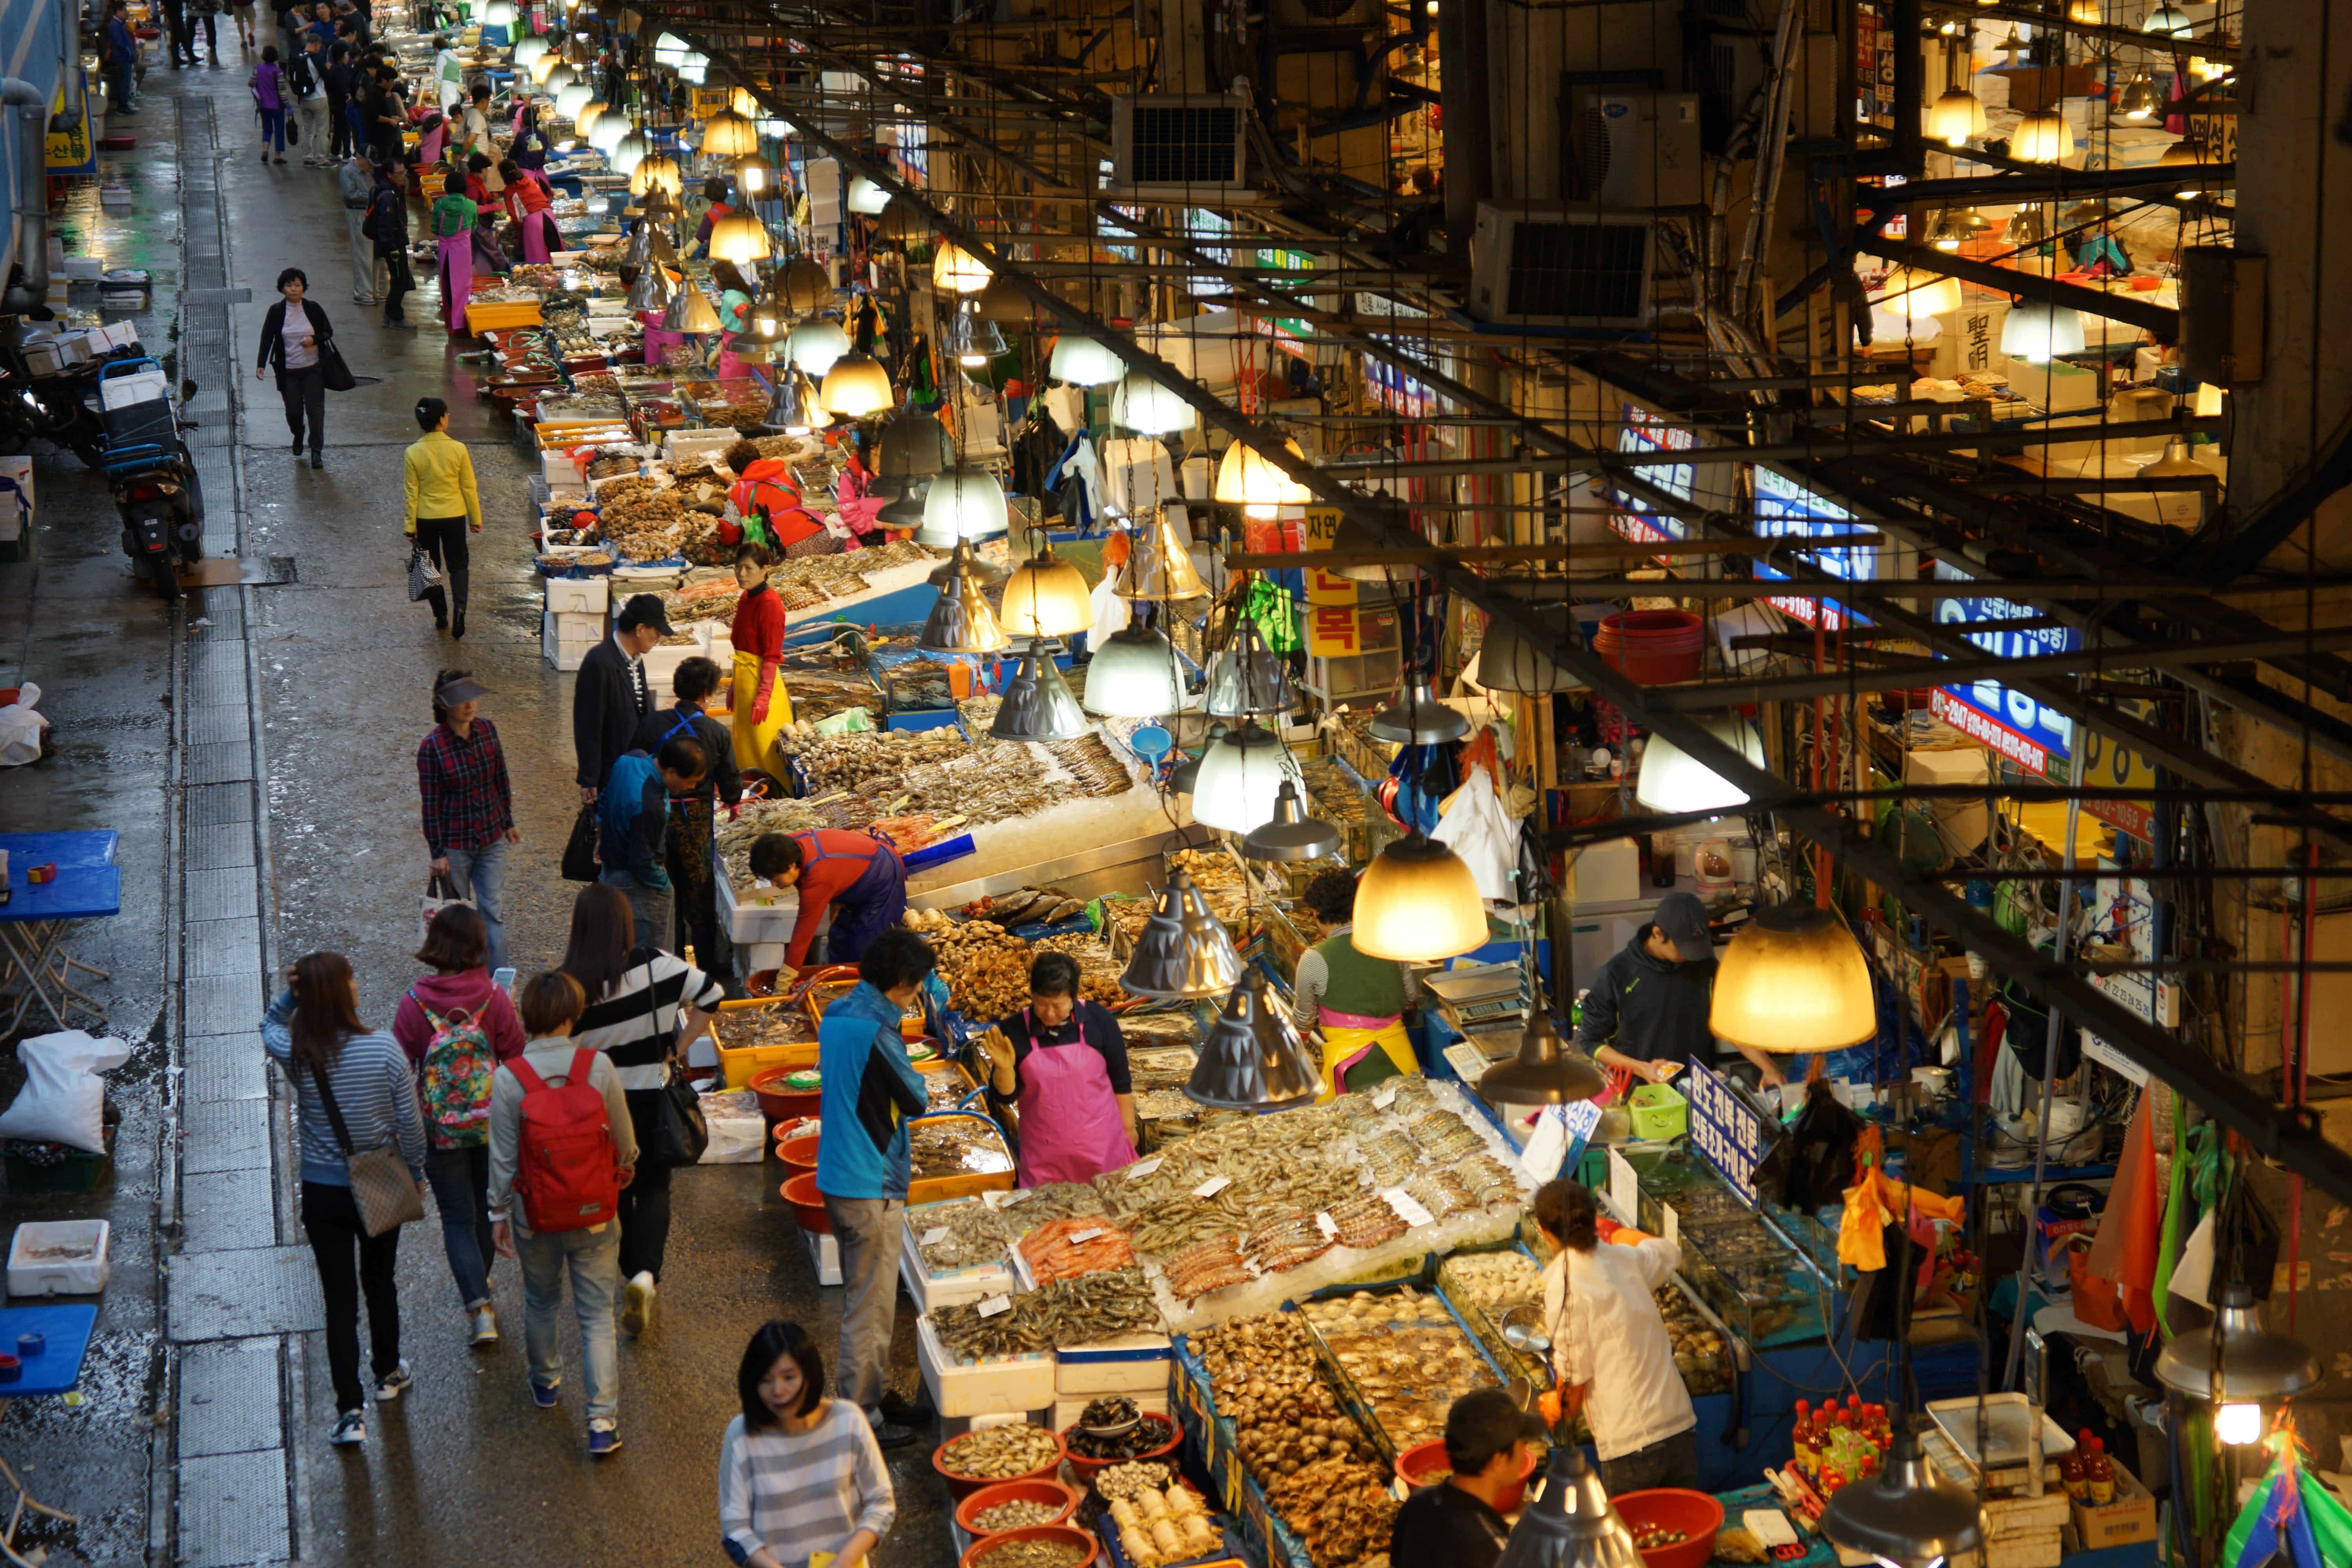 A bustling public market in Korea